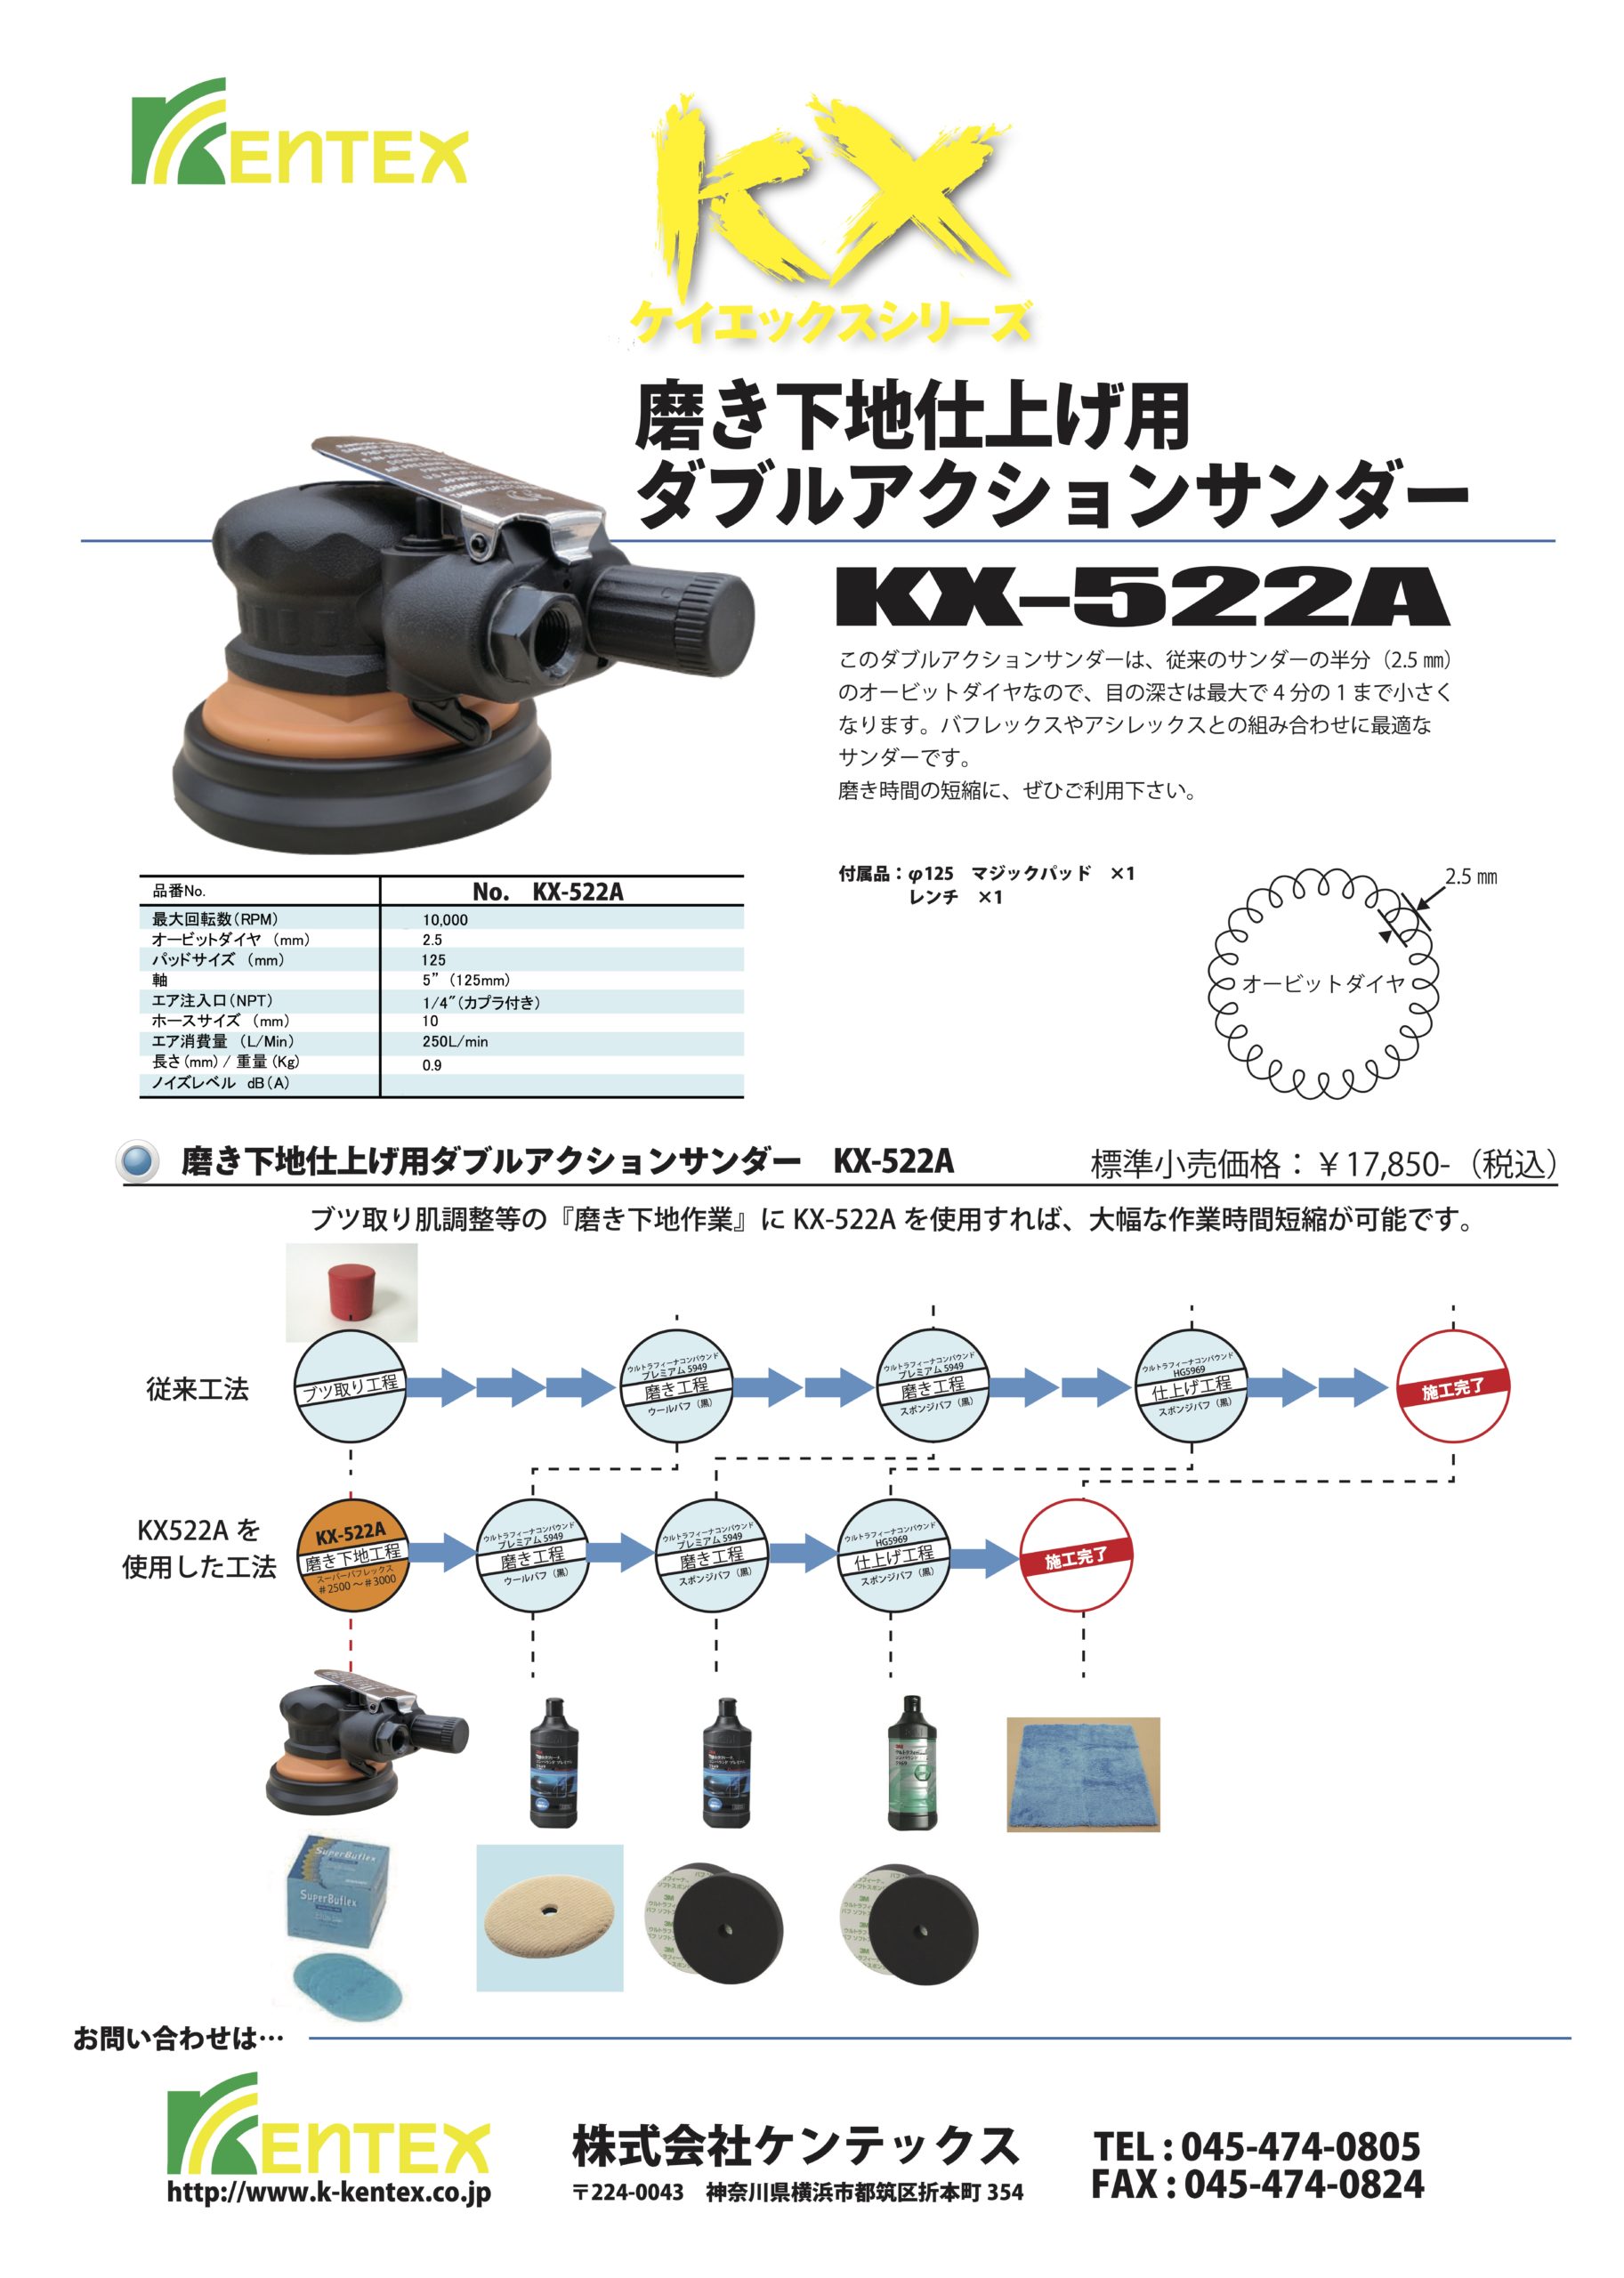 KX-522Aの説明用チラシです。